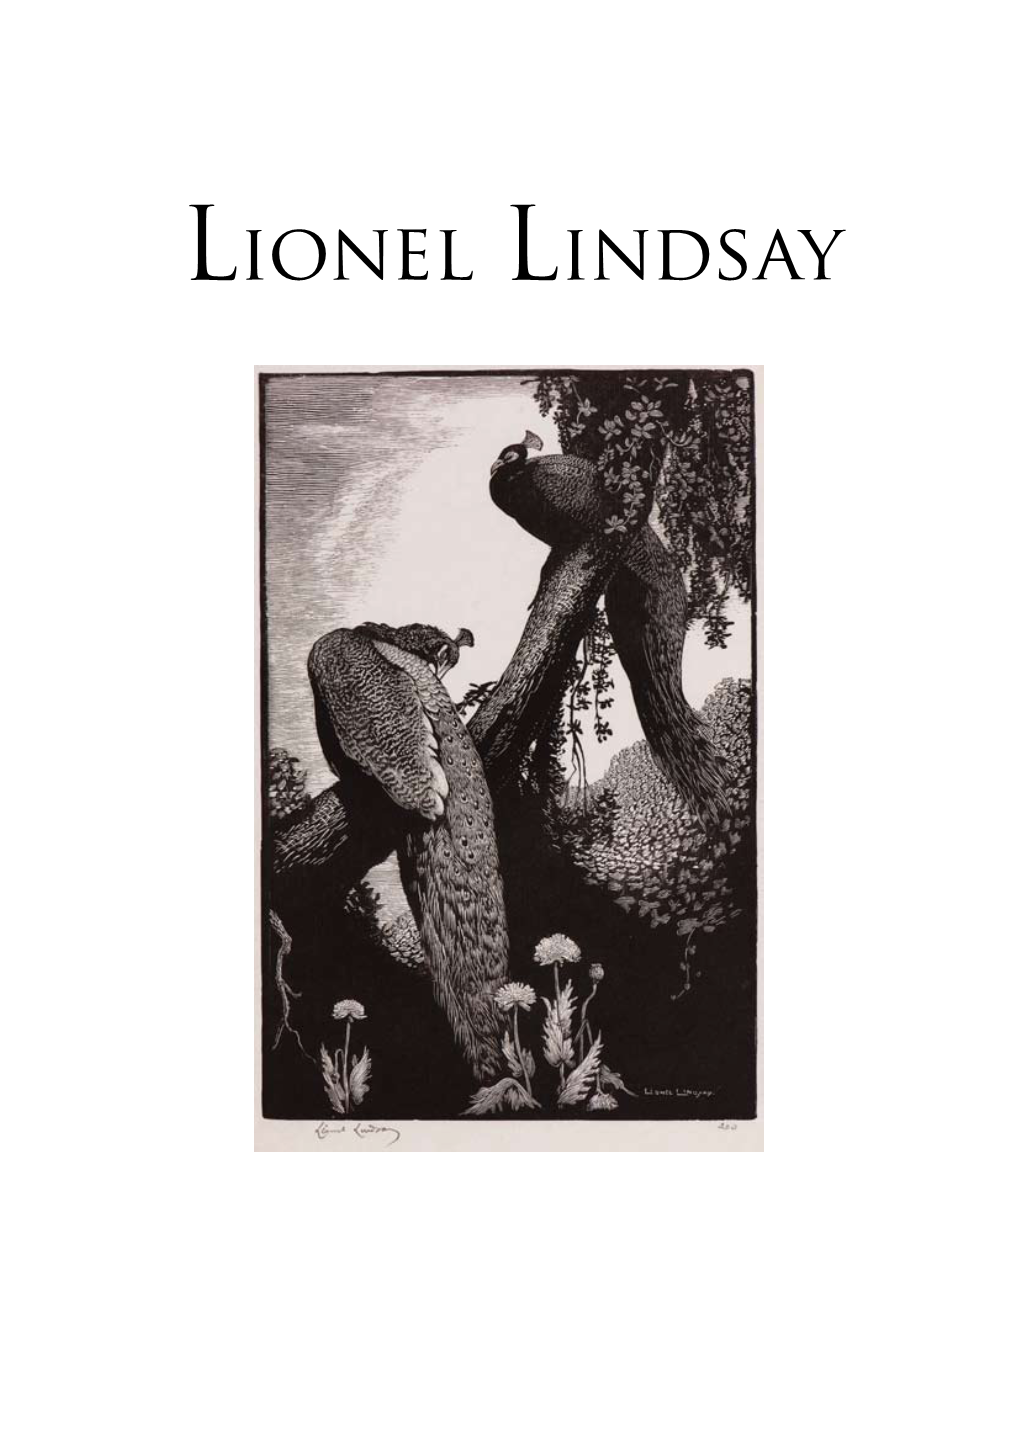 Lionel Lindsay